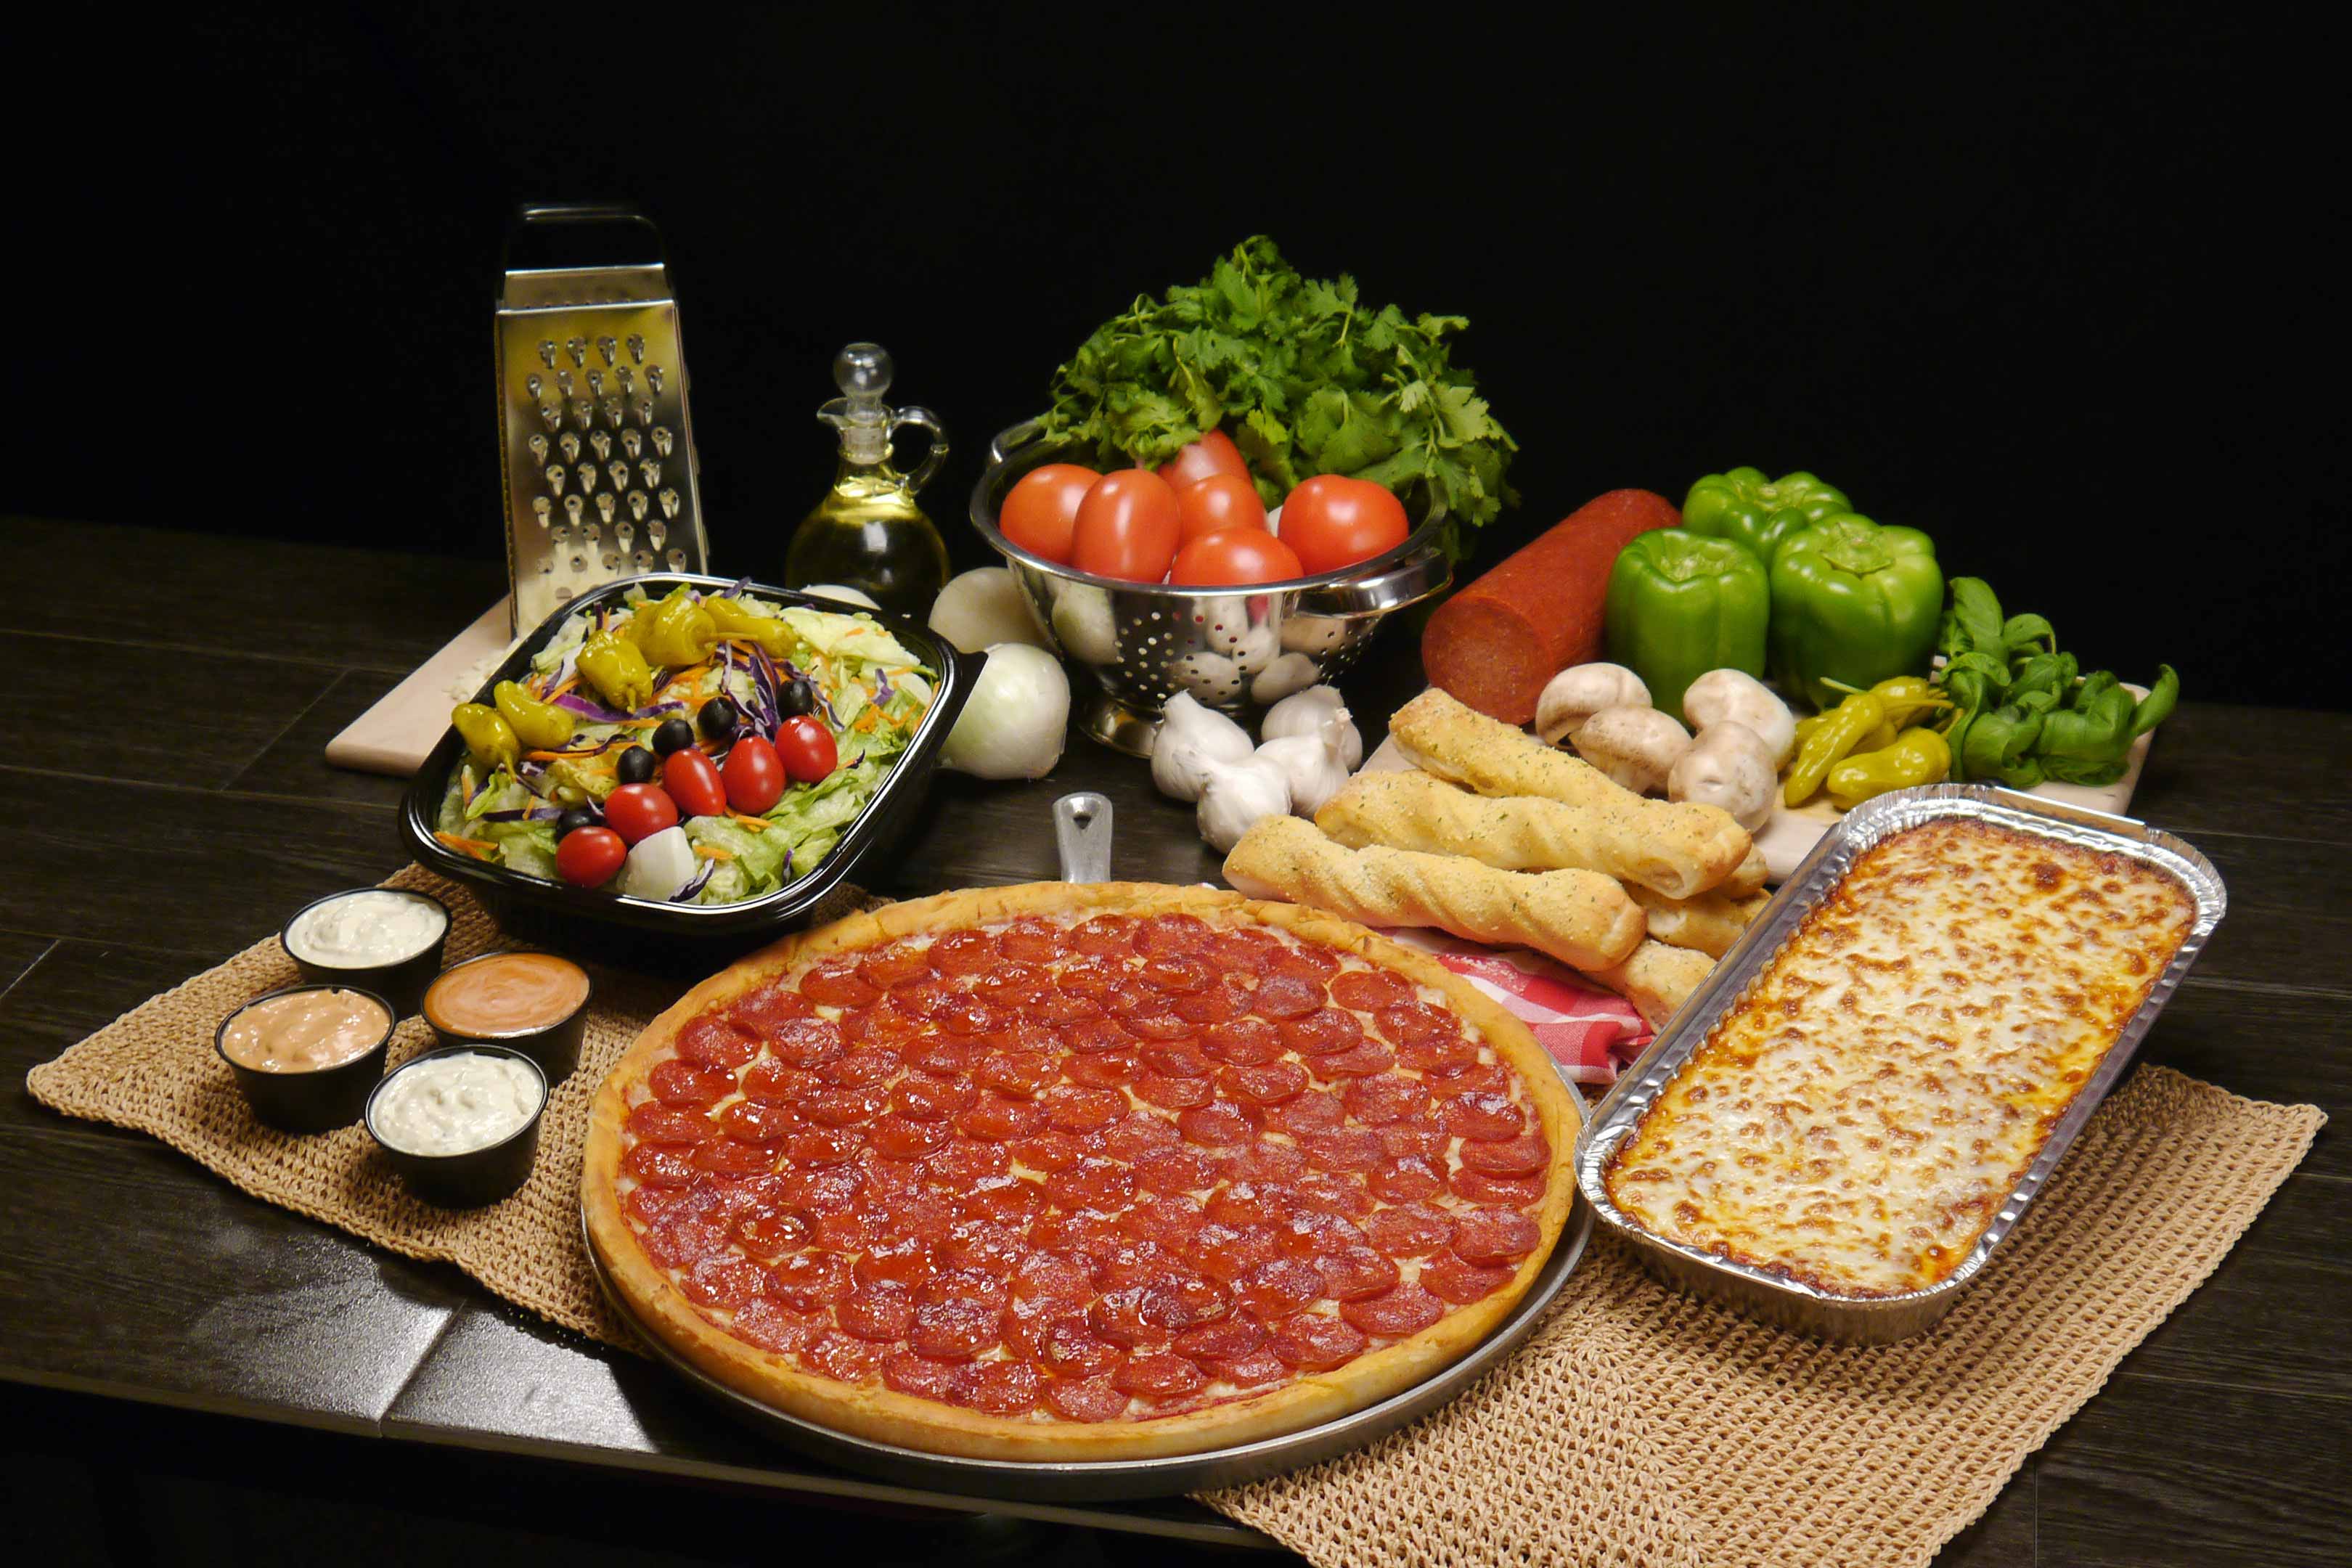 Valentino's Award-winning pizza, pasta, salad, breadsticks